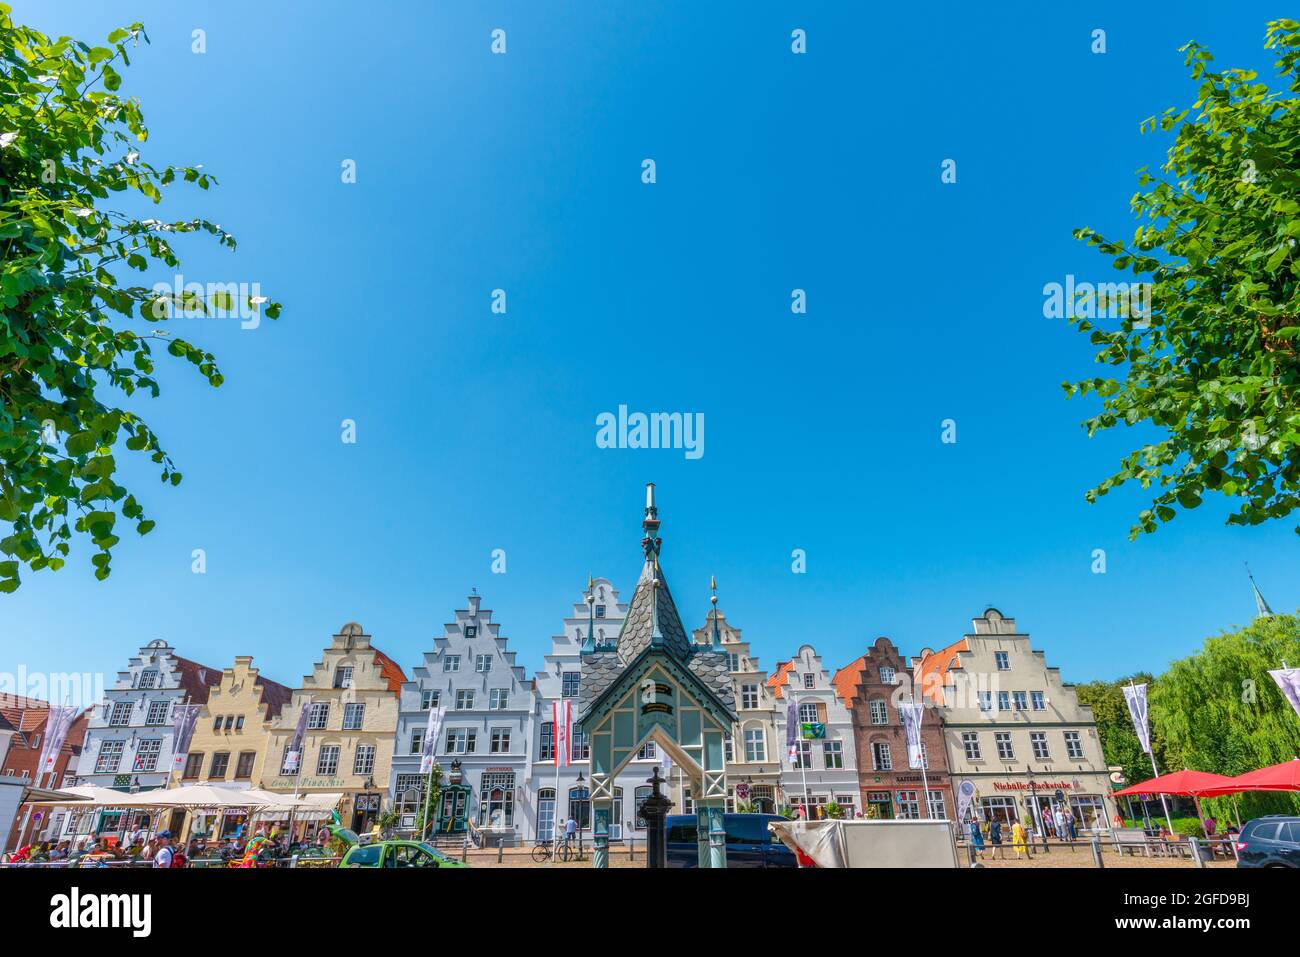 Complesso di case con scuderie a gradini in Piazza del mercato, Friedrichstadt, Frisia settentrionale, Schleswig-Holstein, Germania settentrionale Foto Stock